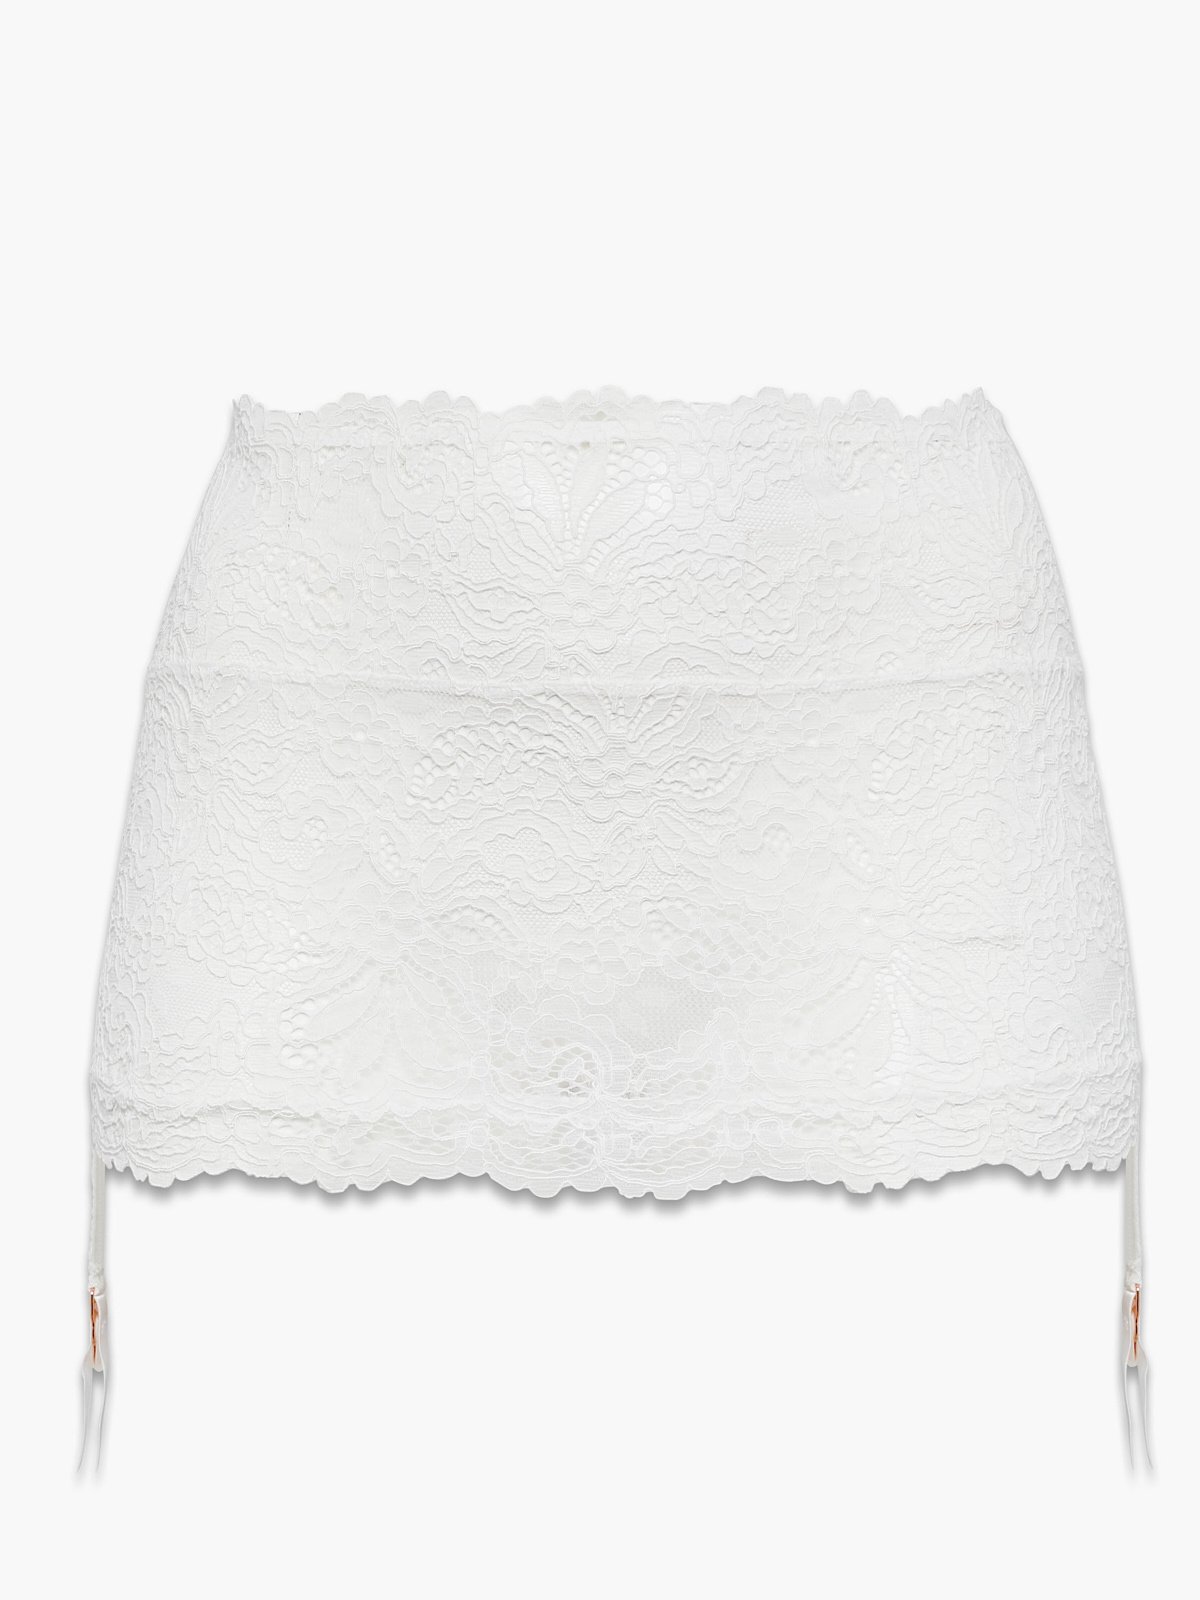 Romantic Corded Lace Garter Skirt